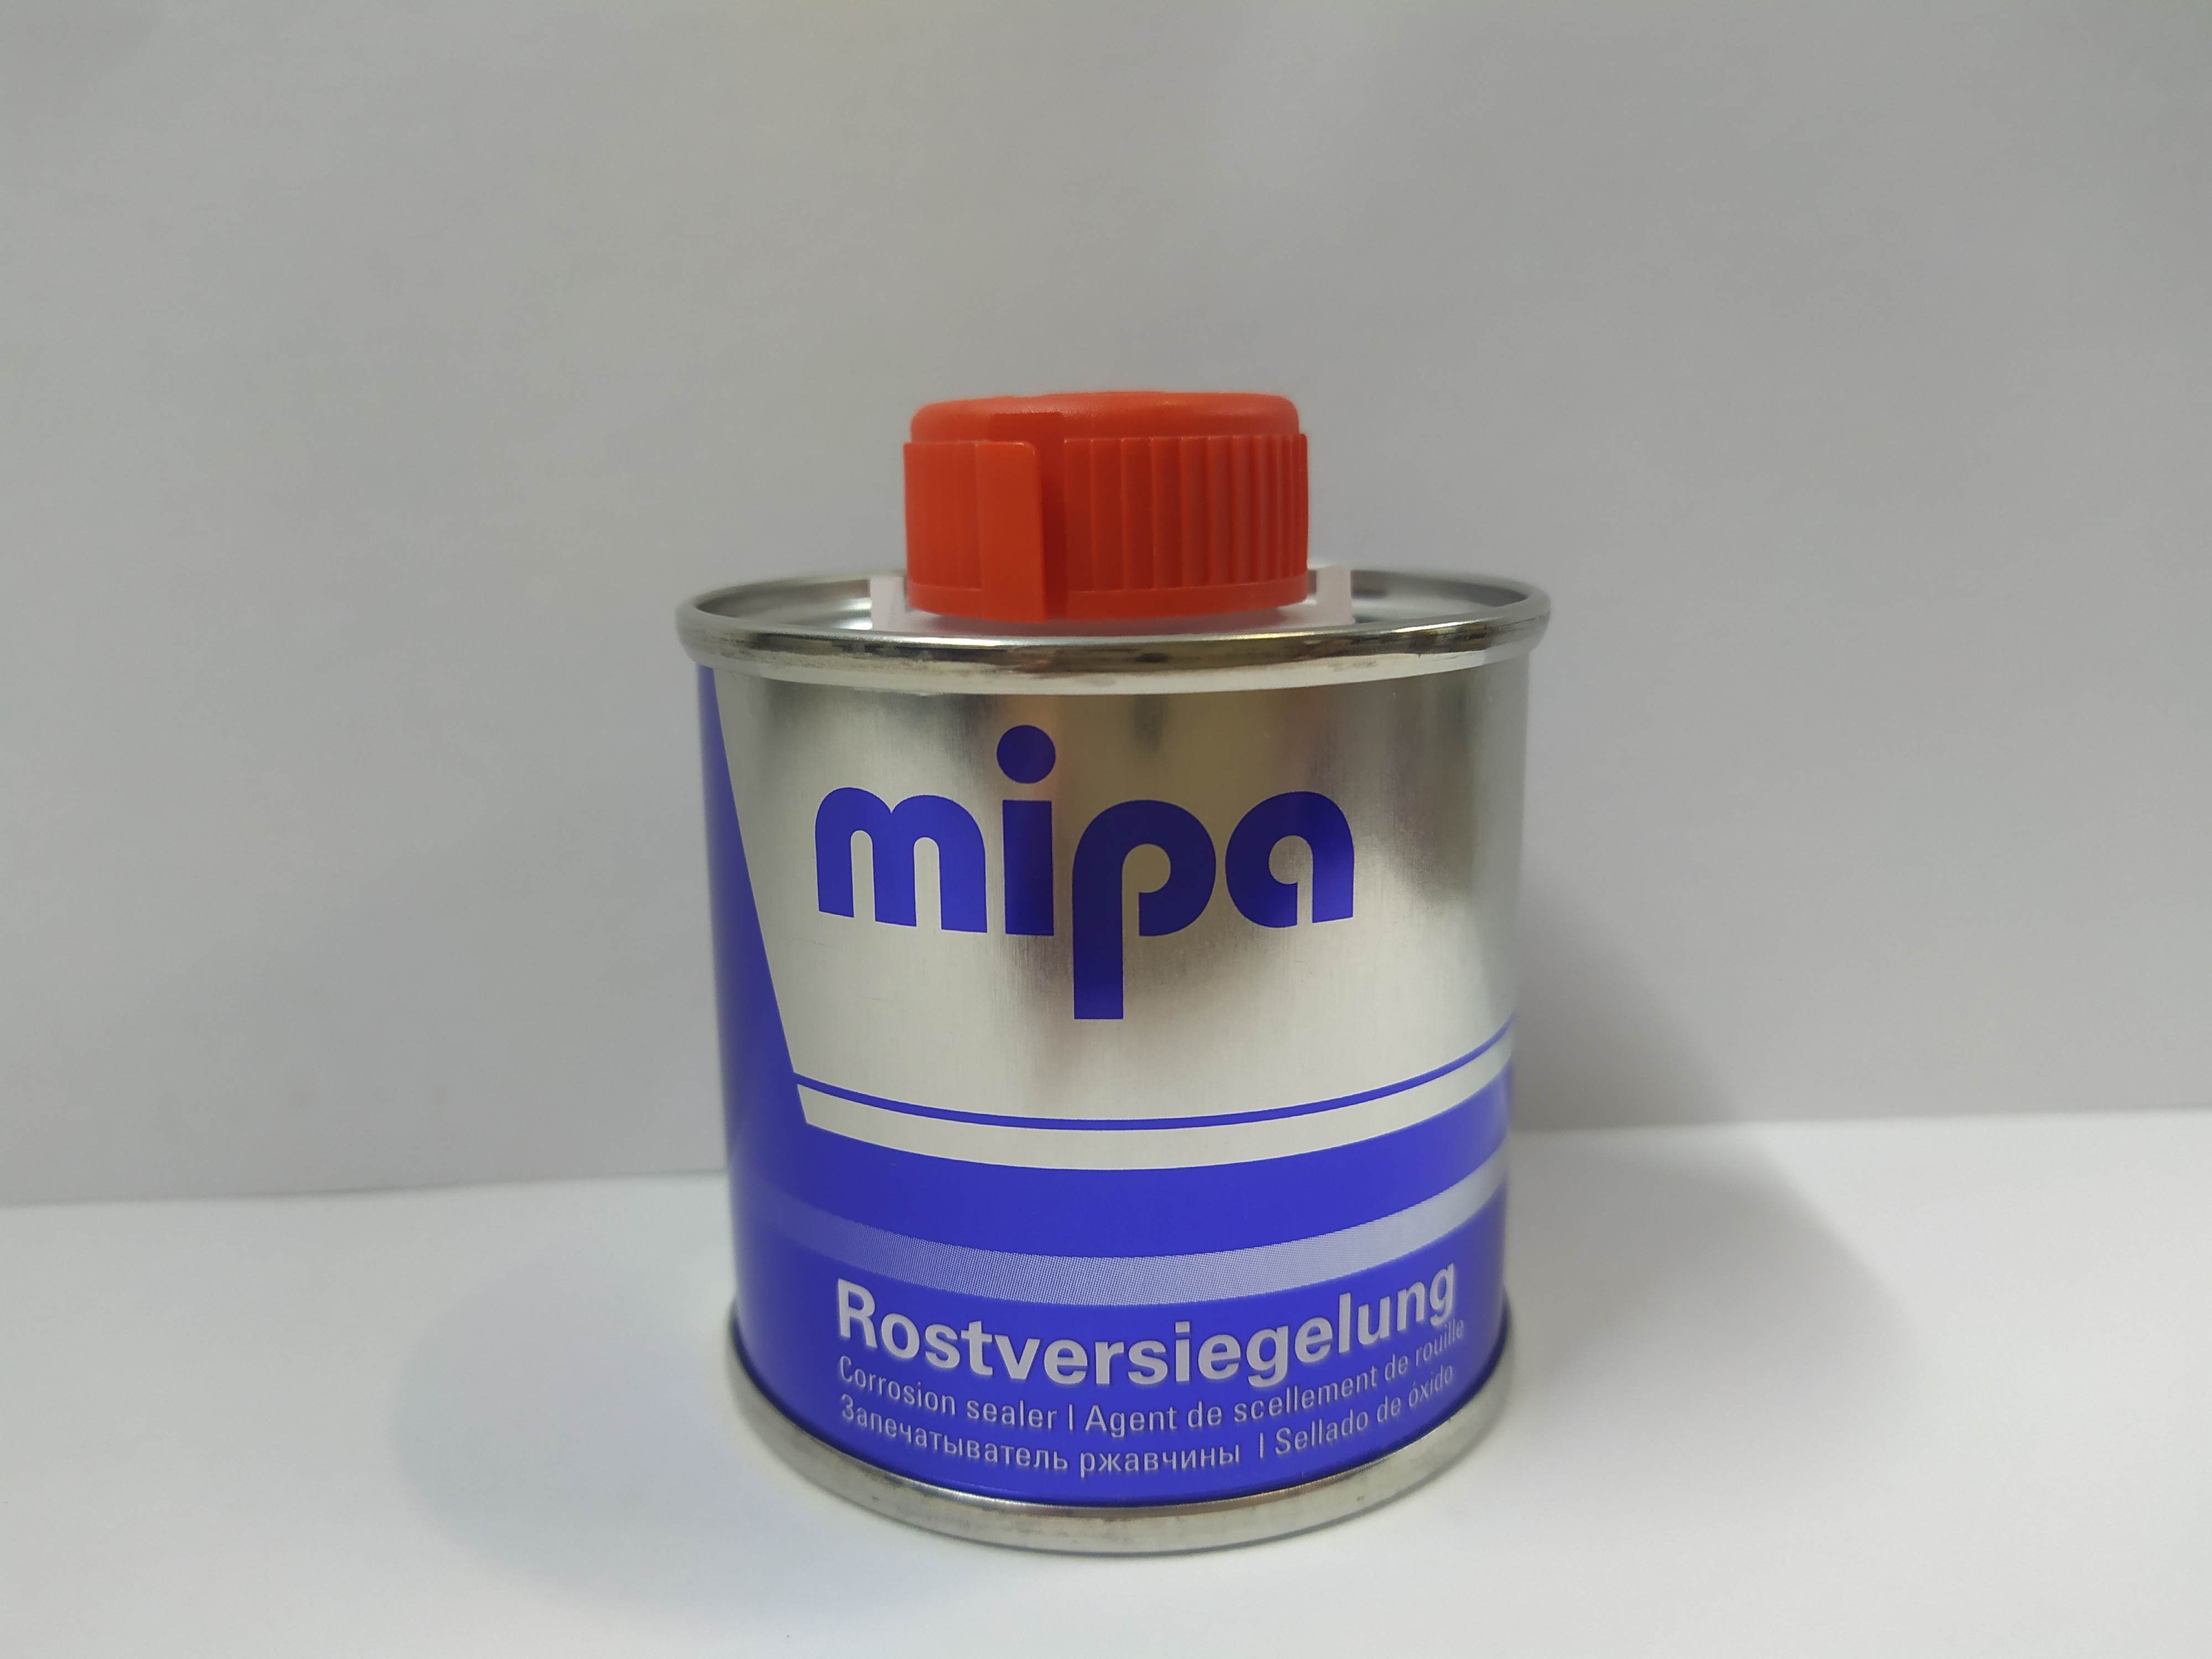 Запечатыватель ржавчины для авто. Запечатыватель ржавчины MIPA. Запечатыватель ржавчины MIPA 100ml. Запечатыватель ржавчины MIPA RUSTSTOP. MIPA запечатыватель ржавчины инструкция.